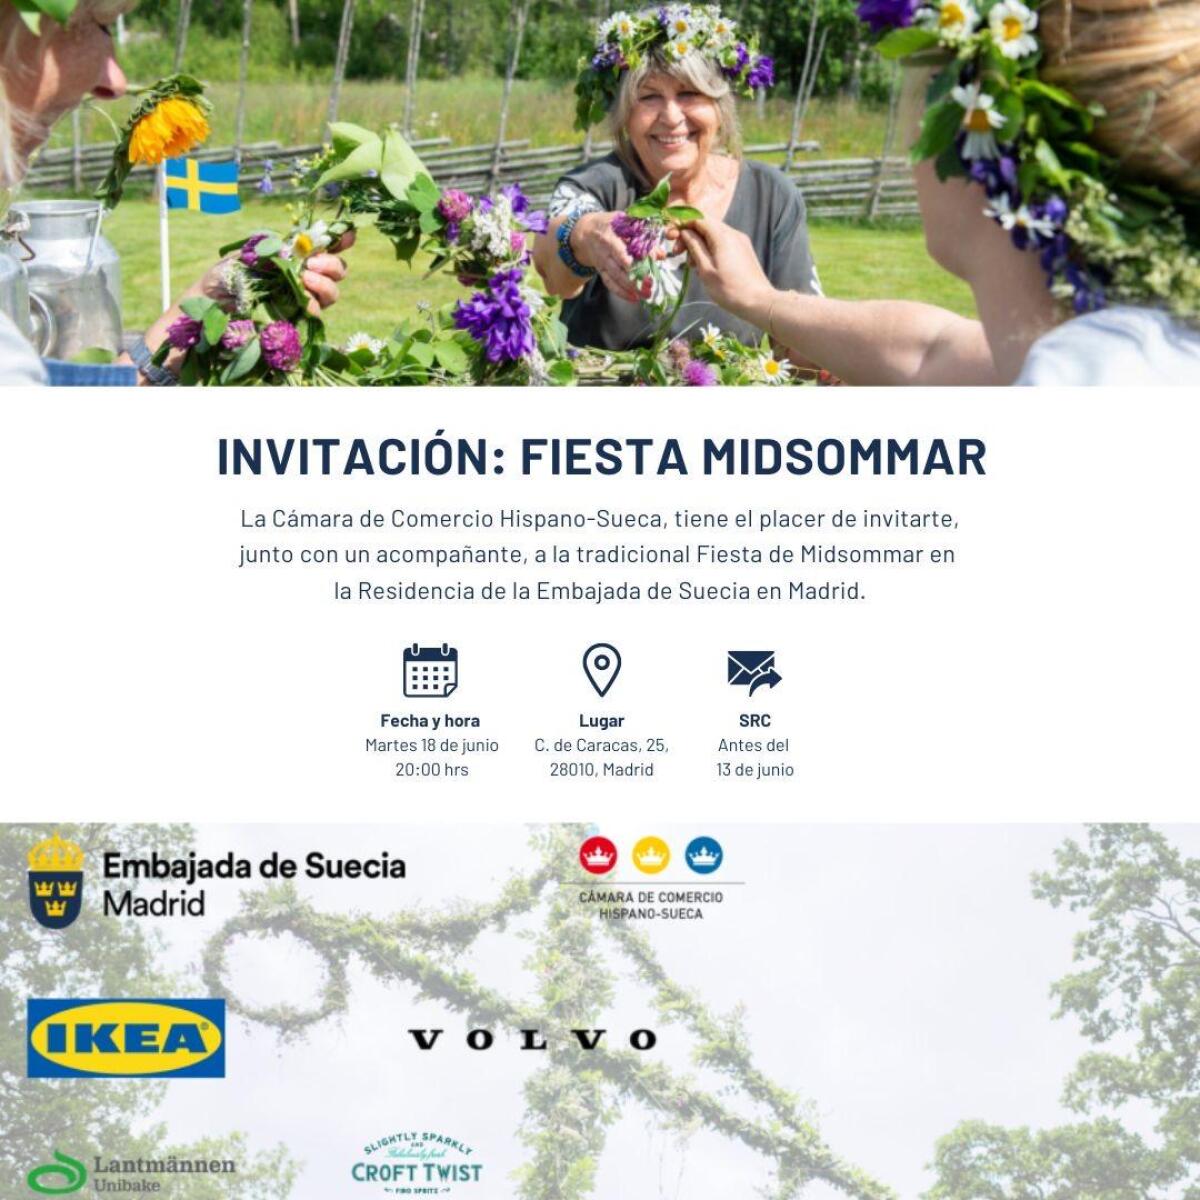  Invitación a Celebración Midsommar en Madrid